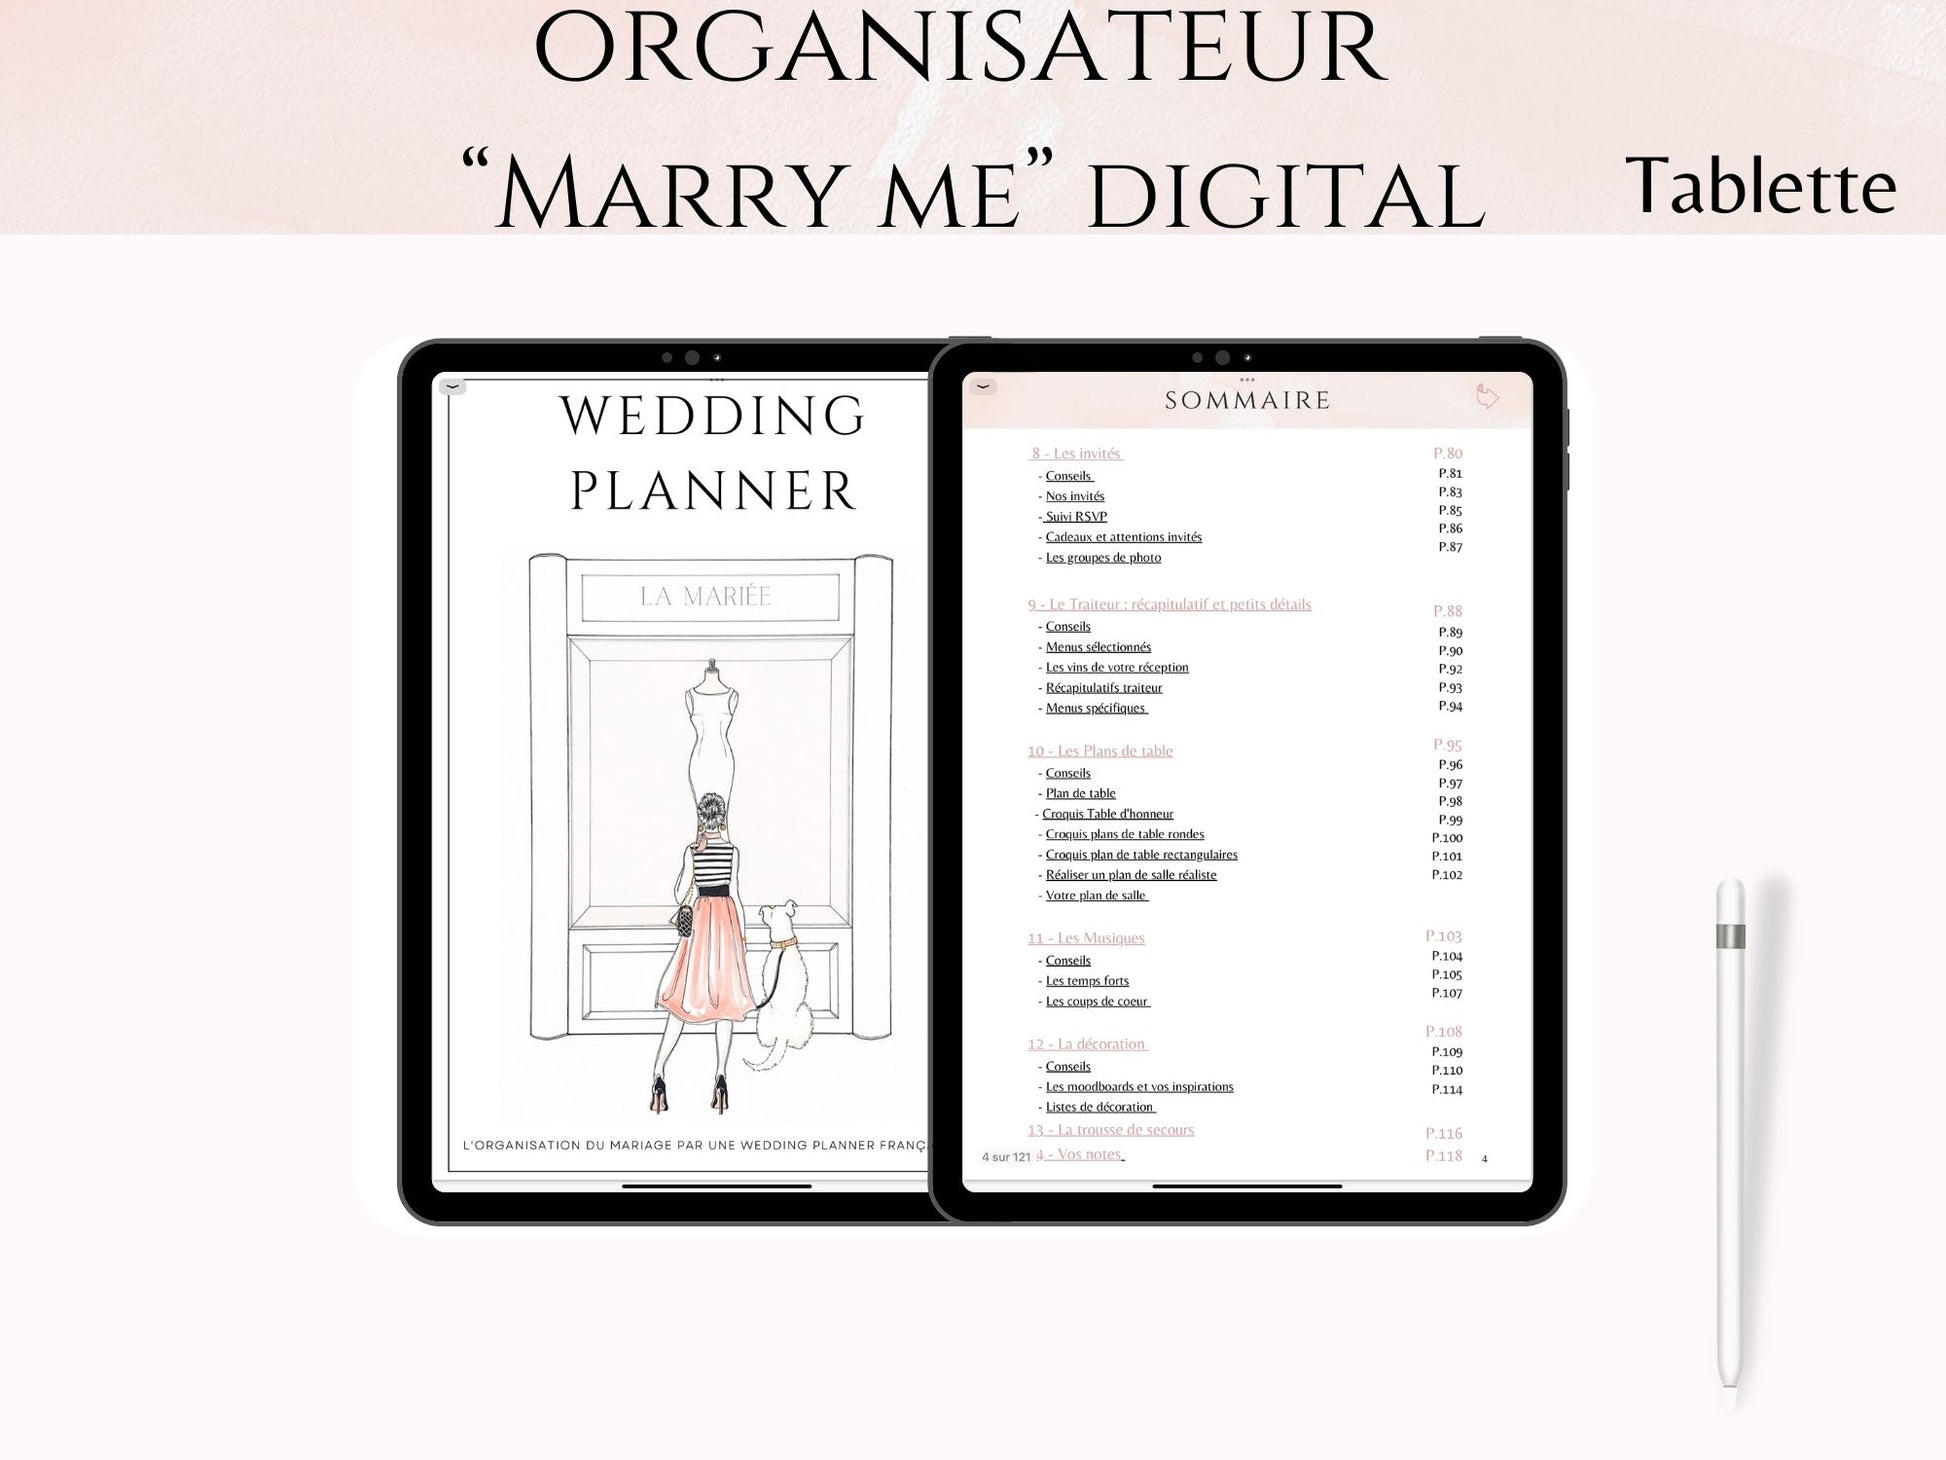 Organisateur de mariage digital - Marry Me pour Tablette – Mary